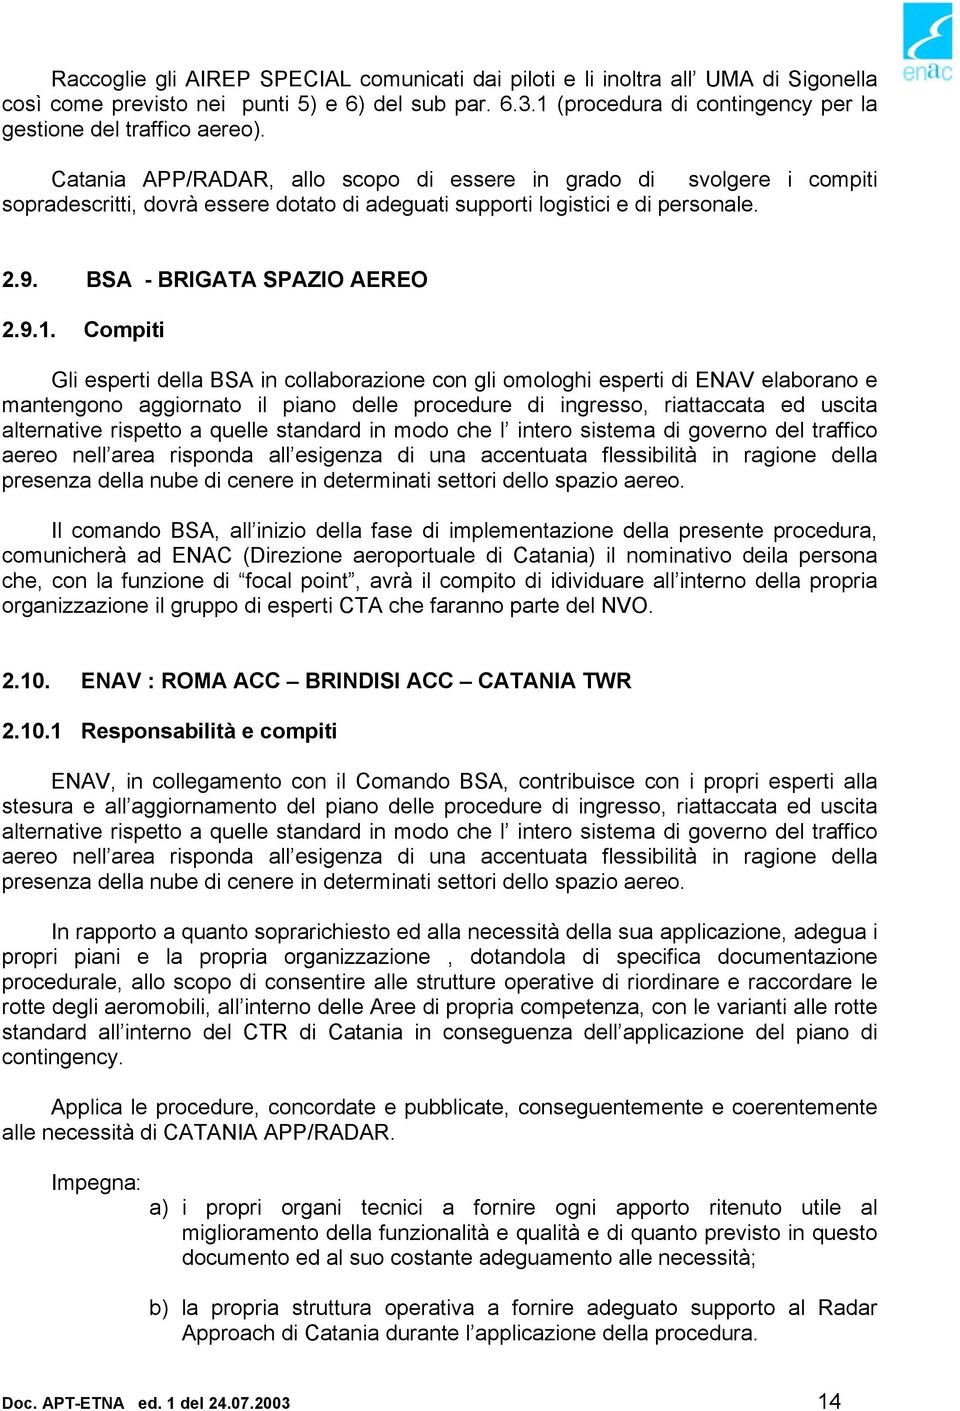 Catania APP/RADAR, allo scopo di essere in grado di svolgere i compiti sopradescritti, dovrà essere dotato di adeguati supporti logistici e di personale. 2.9. BSA - BRIGATA SPAZIO AEREO 2.9.1.